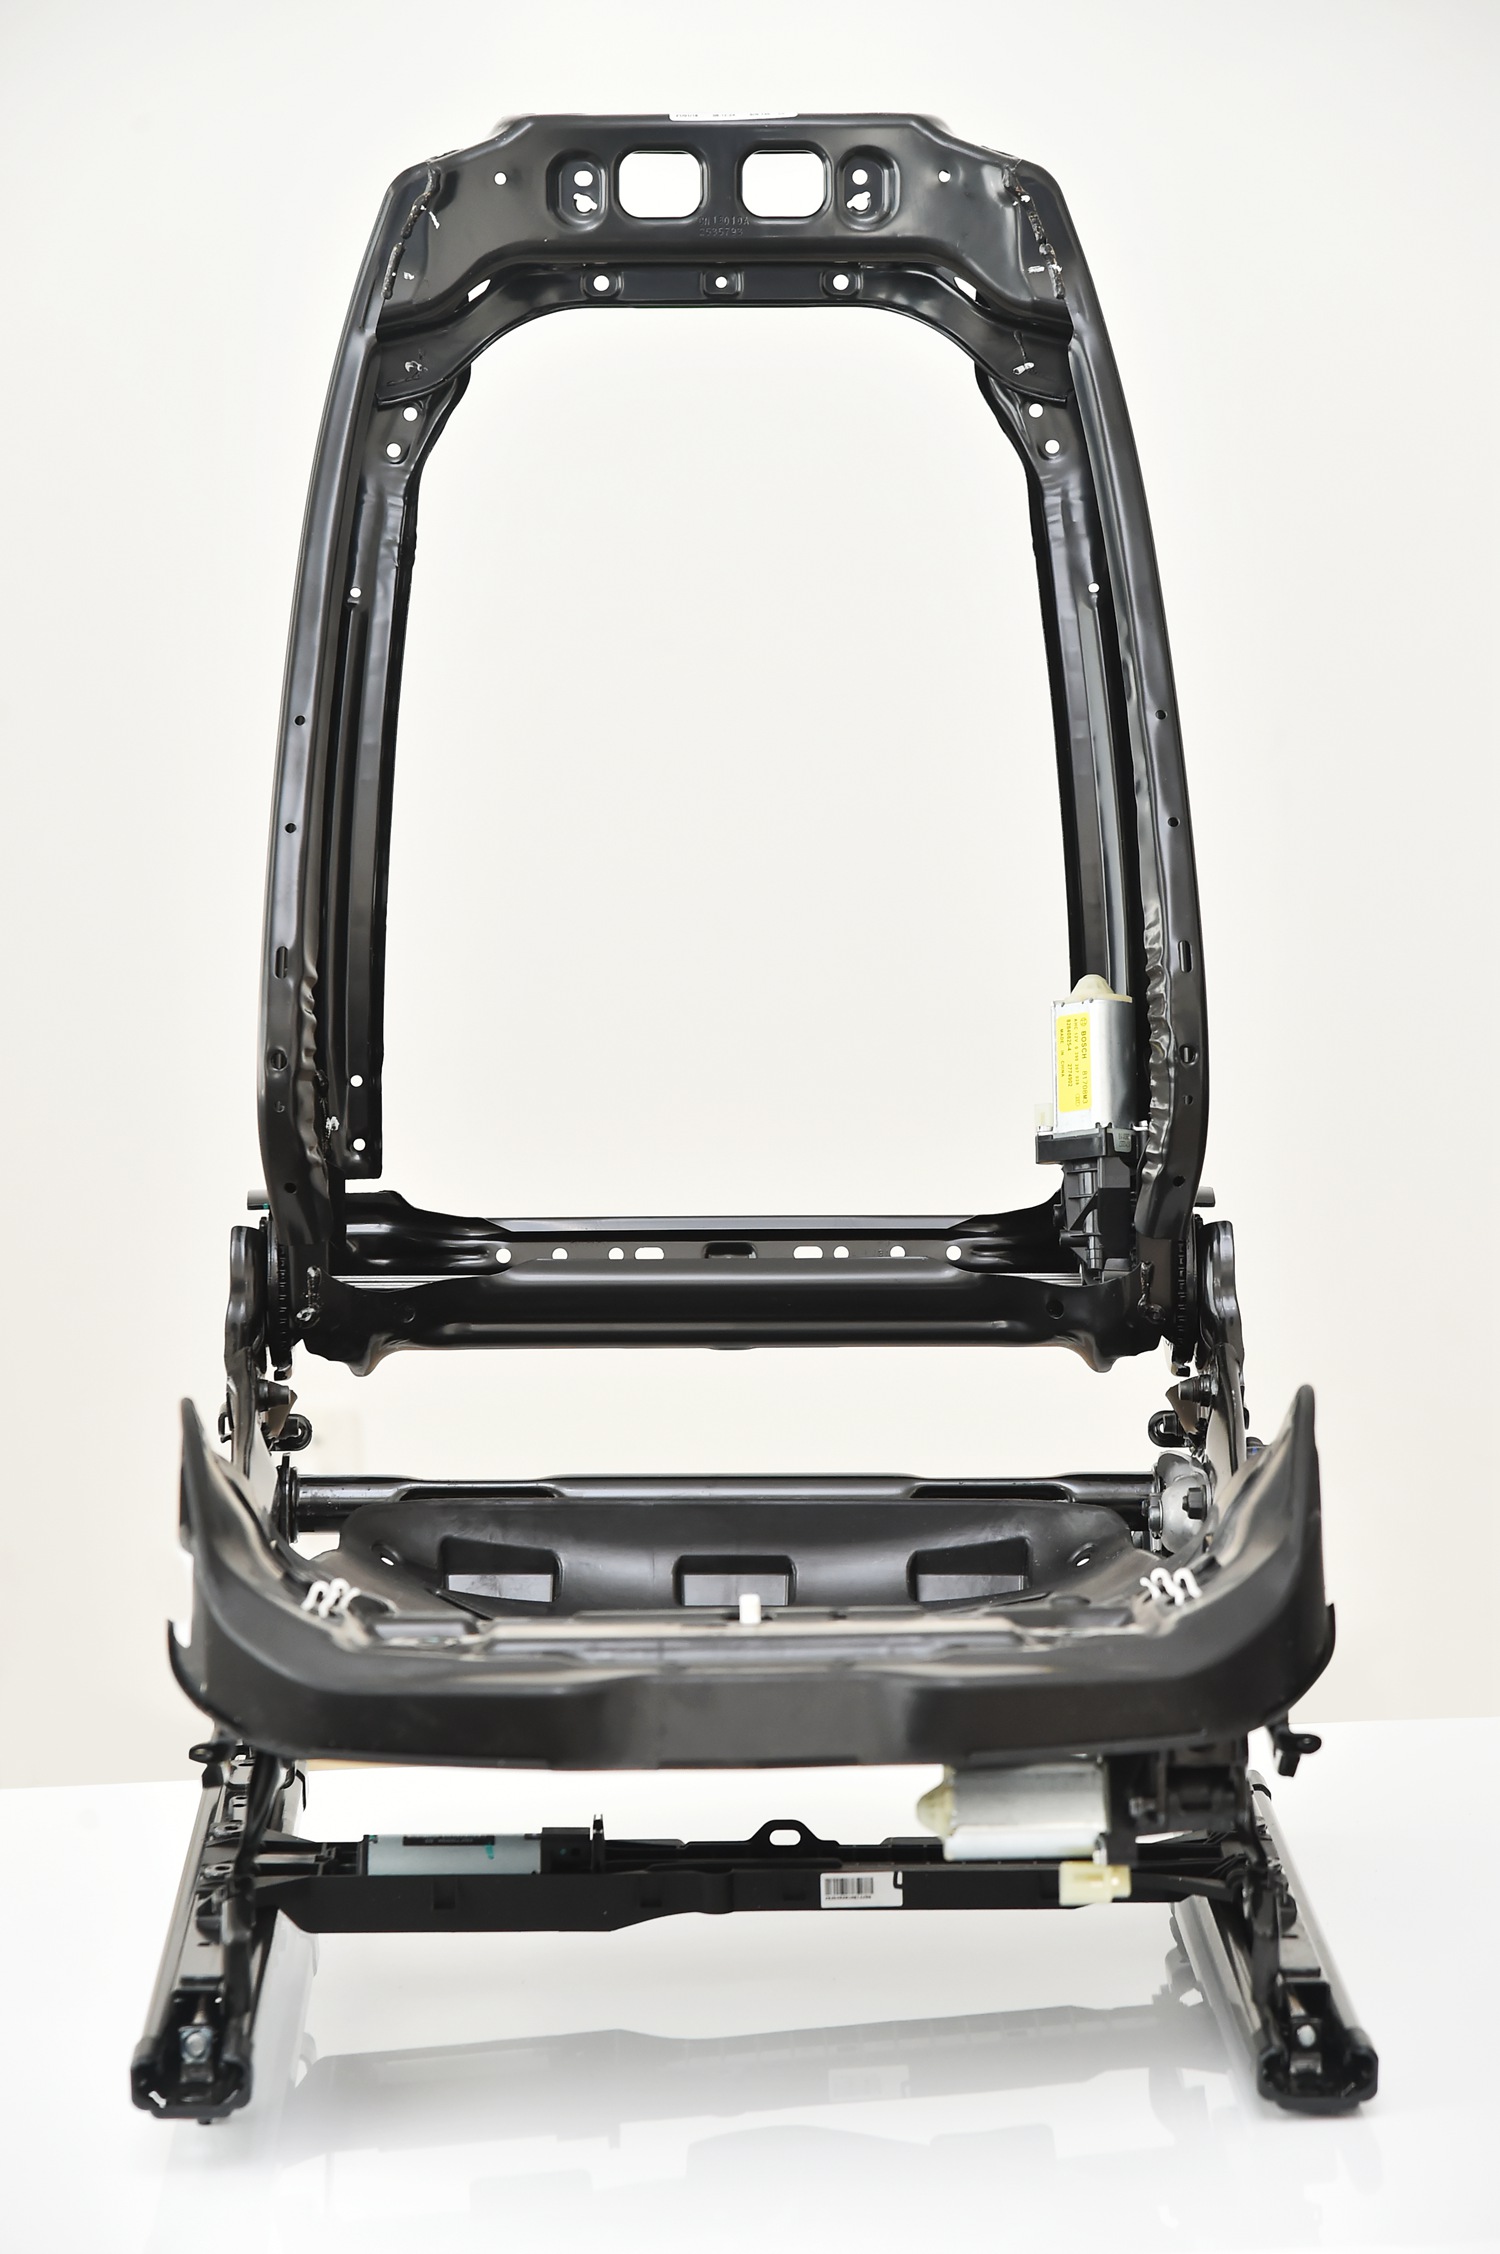 3. 全新座椅骨架使用大量高强度钢及大面积玻璃纤维-1